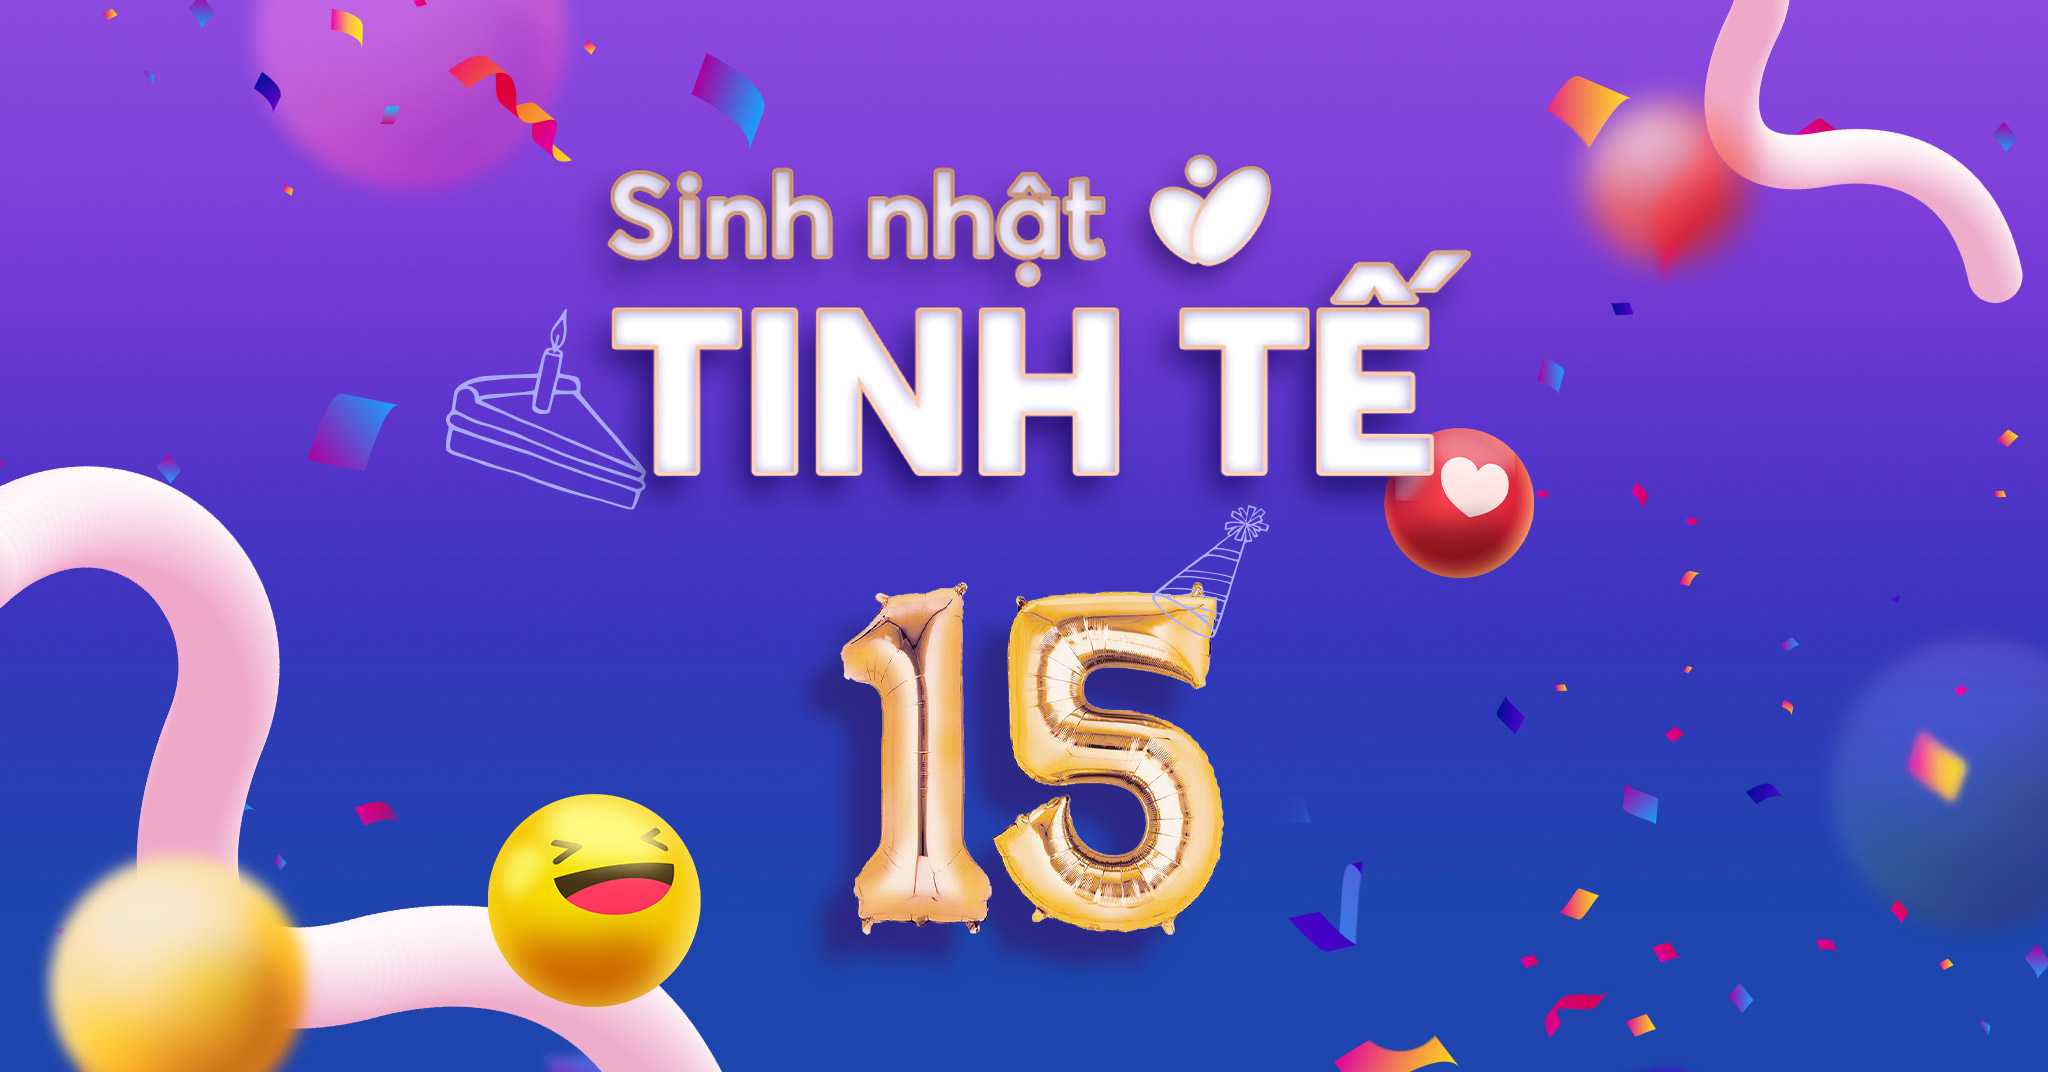 Chuỗi sự kiện đón sinh nhật Minigame bình chọn tính năng yêu thích 2022